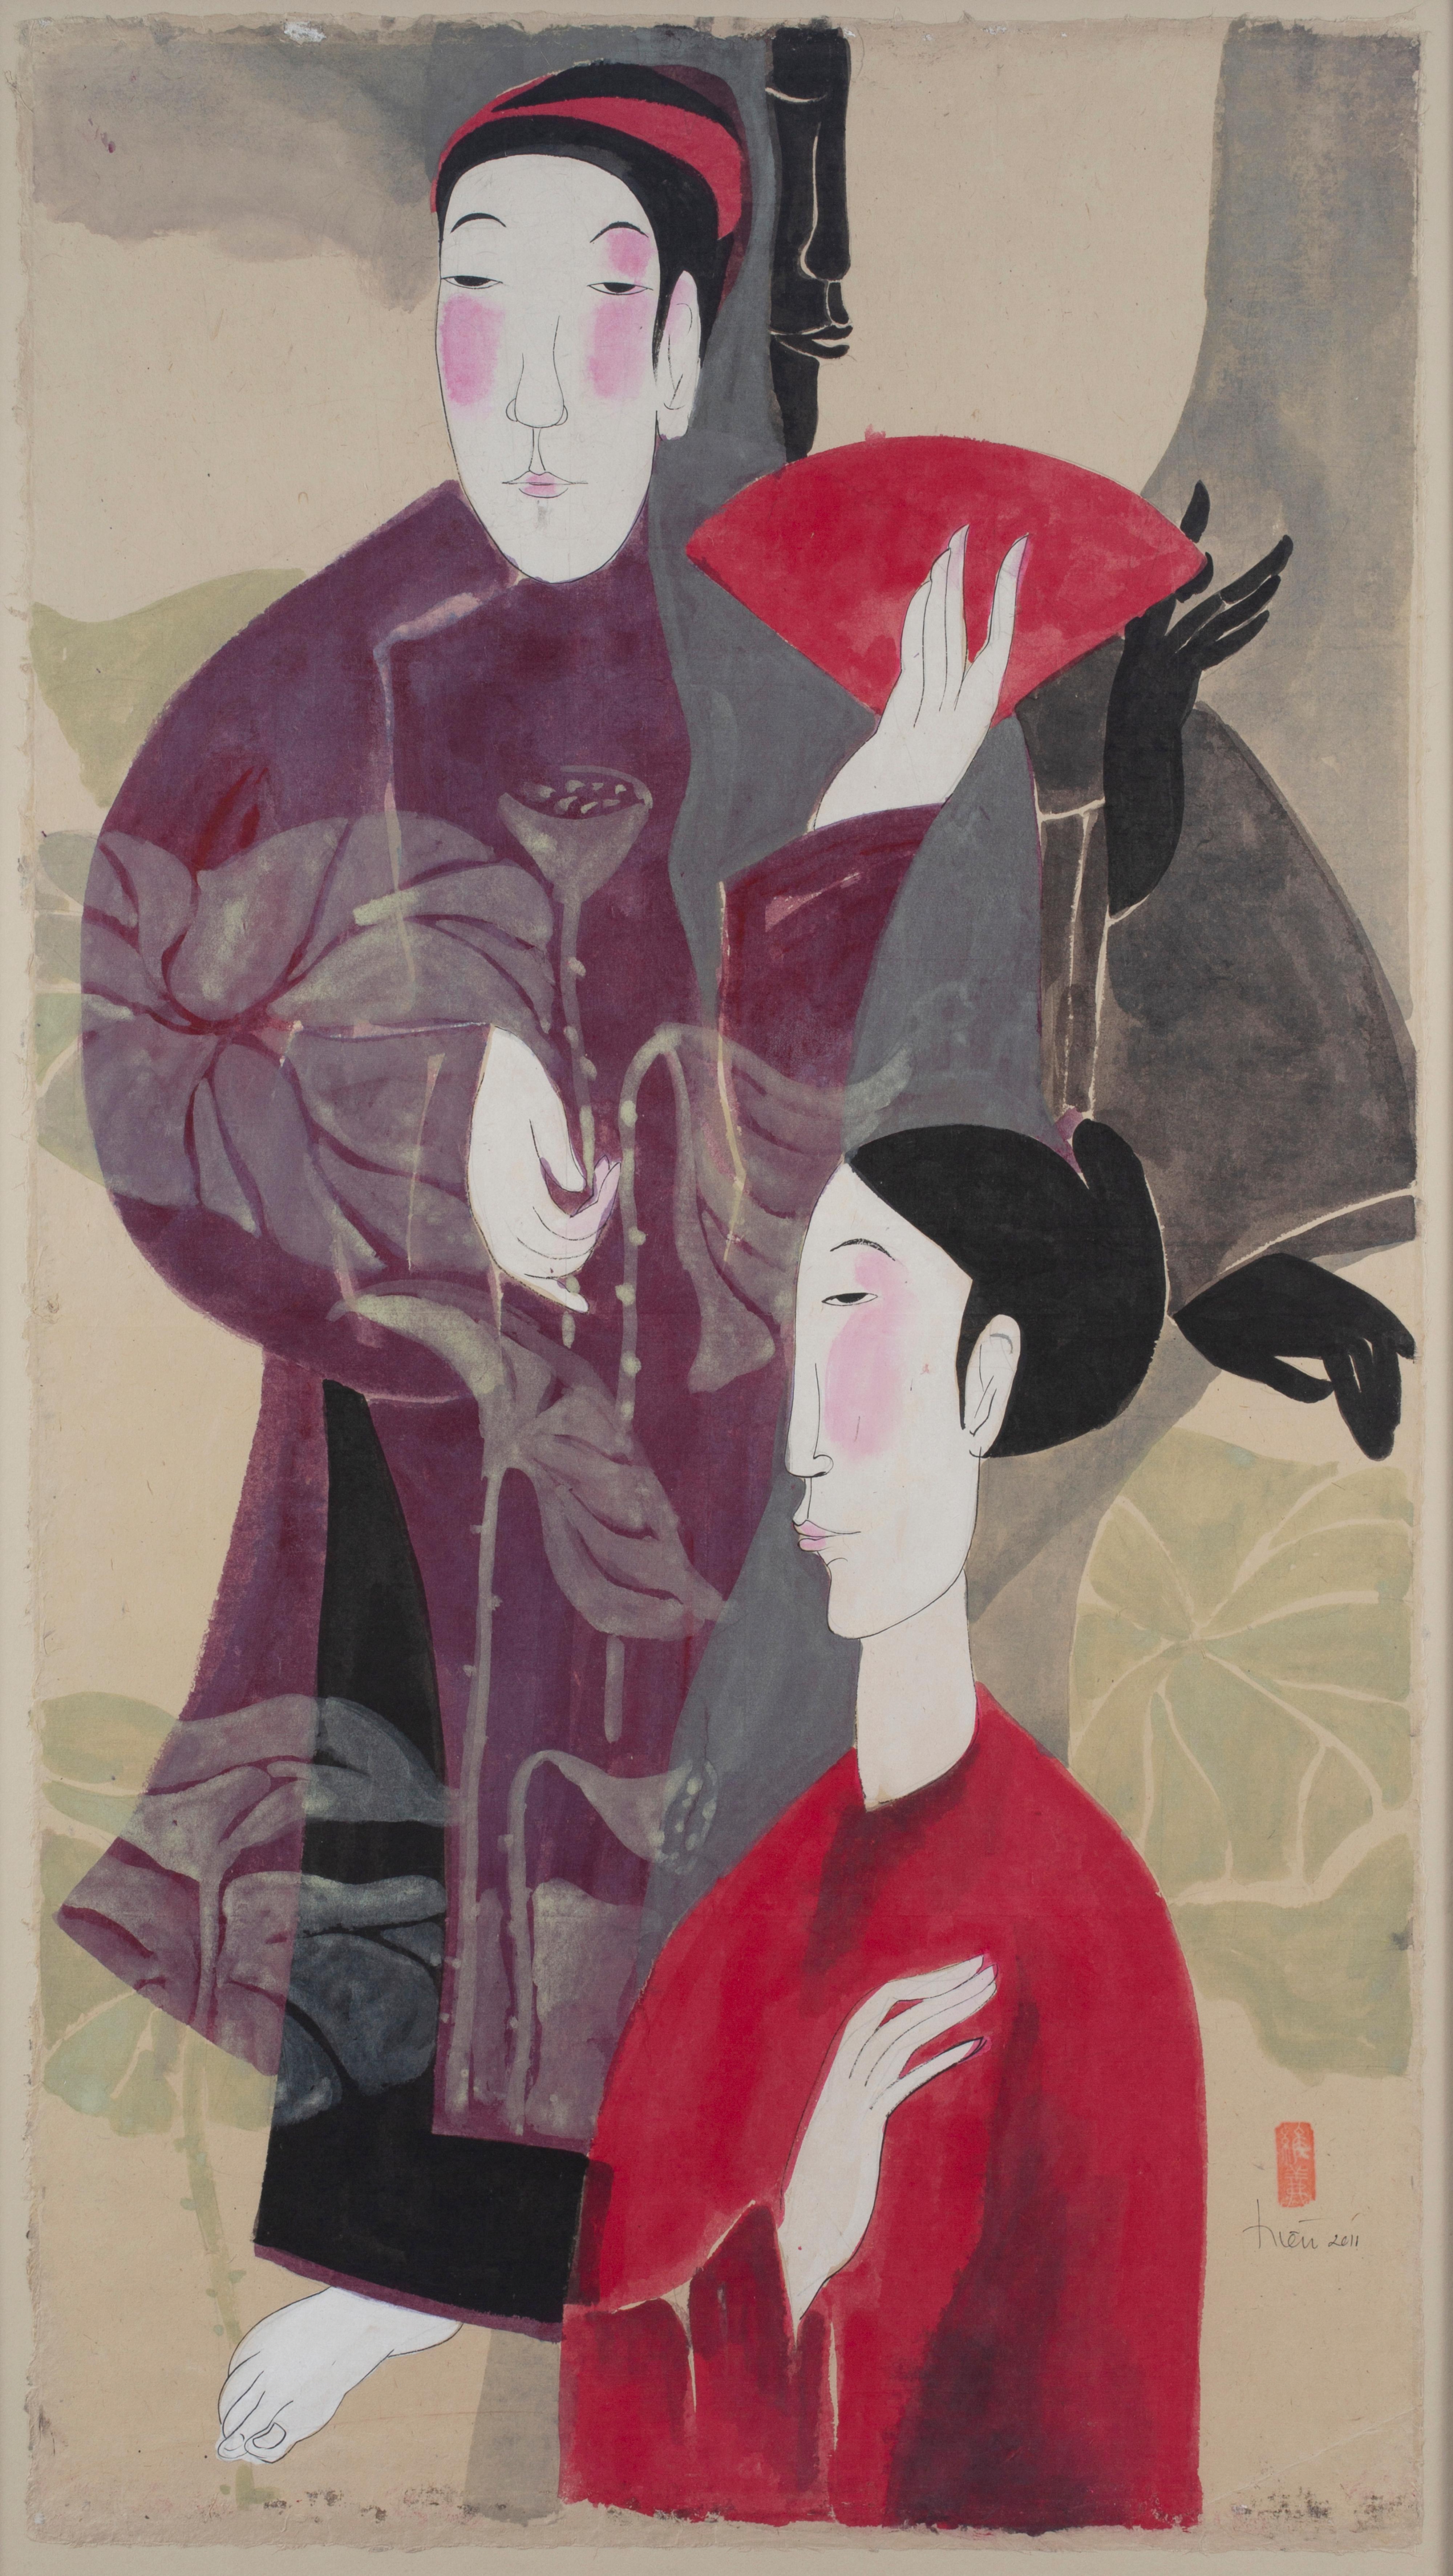 Vu Thu Hien Figurative Art - 'Language of Love' Conceptual Portrait Painting of a Couple